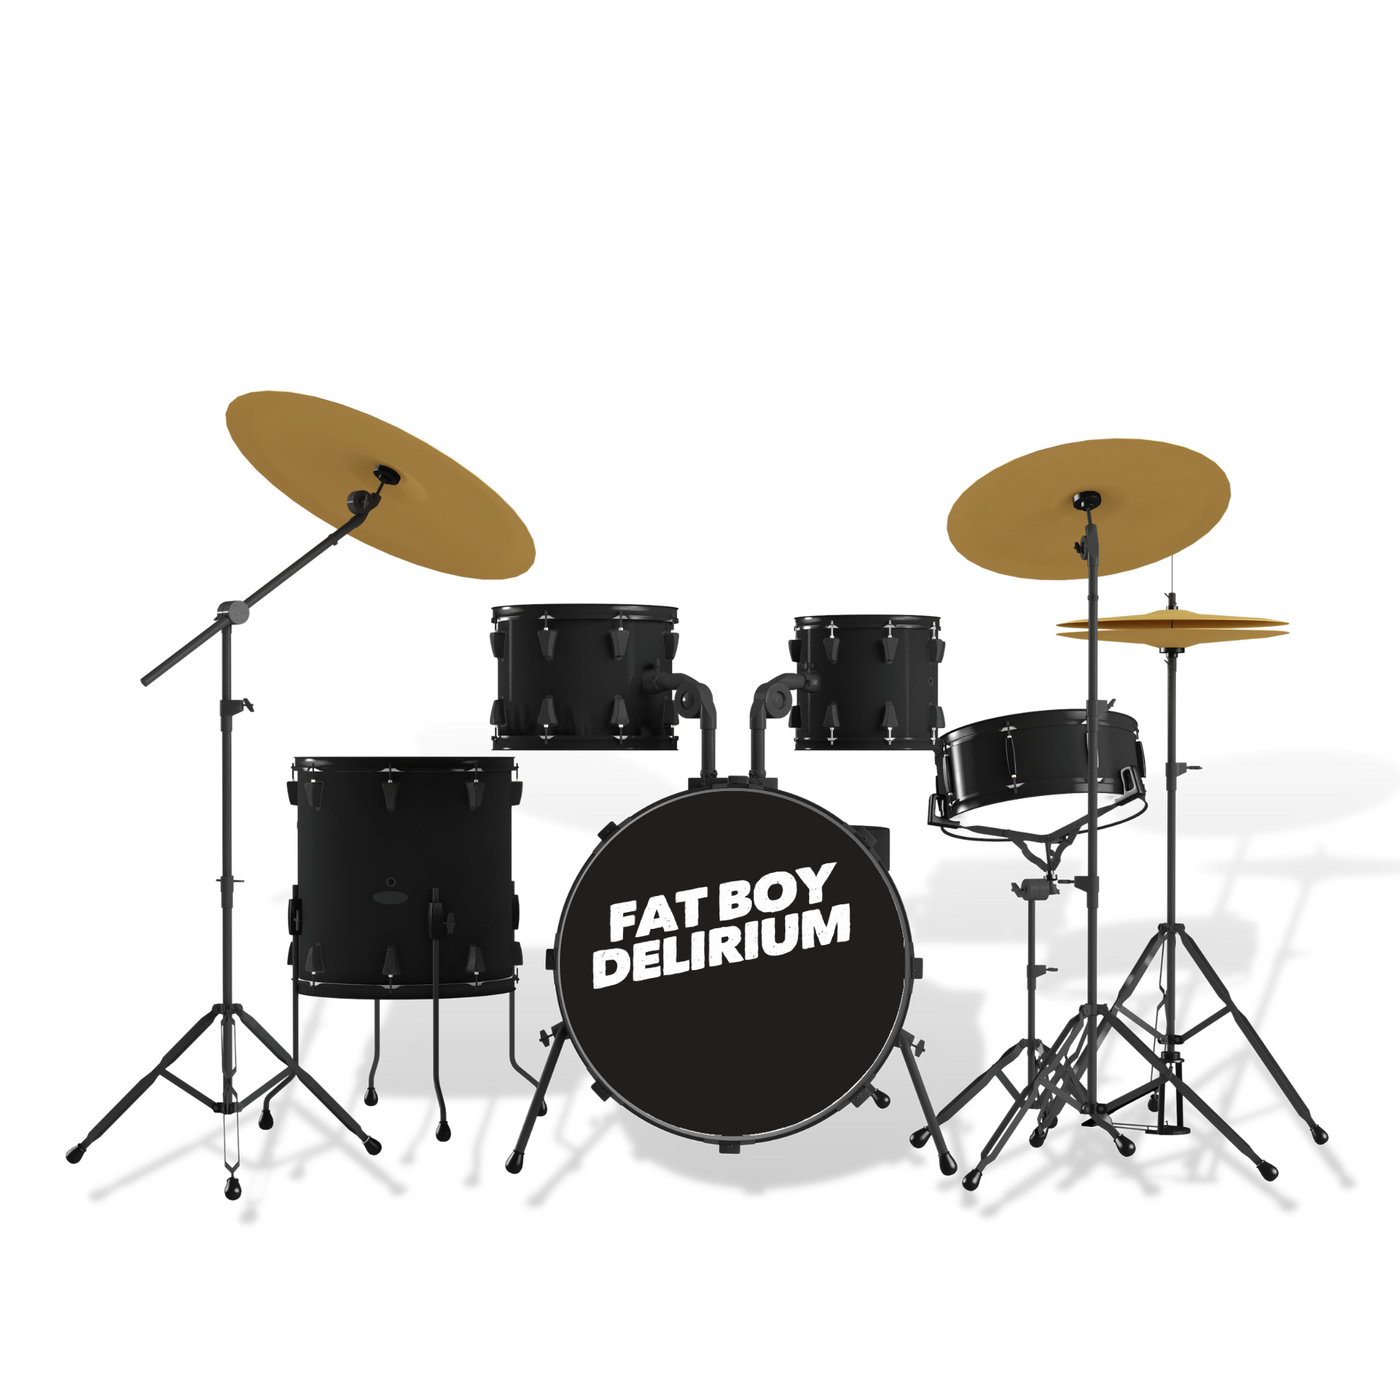 Geschenk-Set "Drummer Standard" mit laser-gravierten Drumsticks - DER BANDMARKT